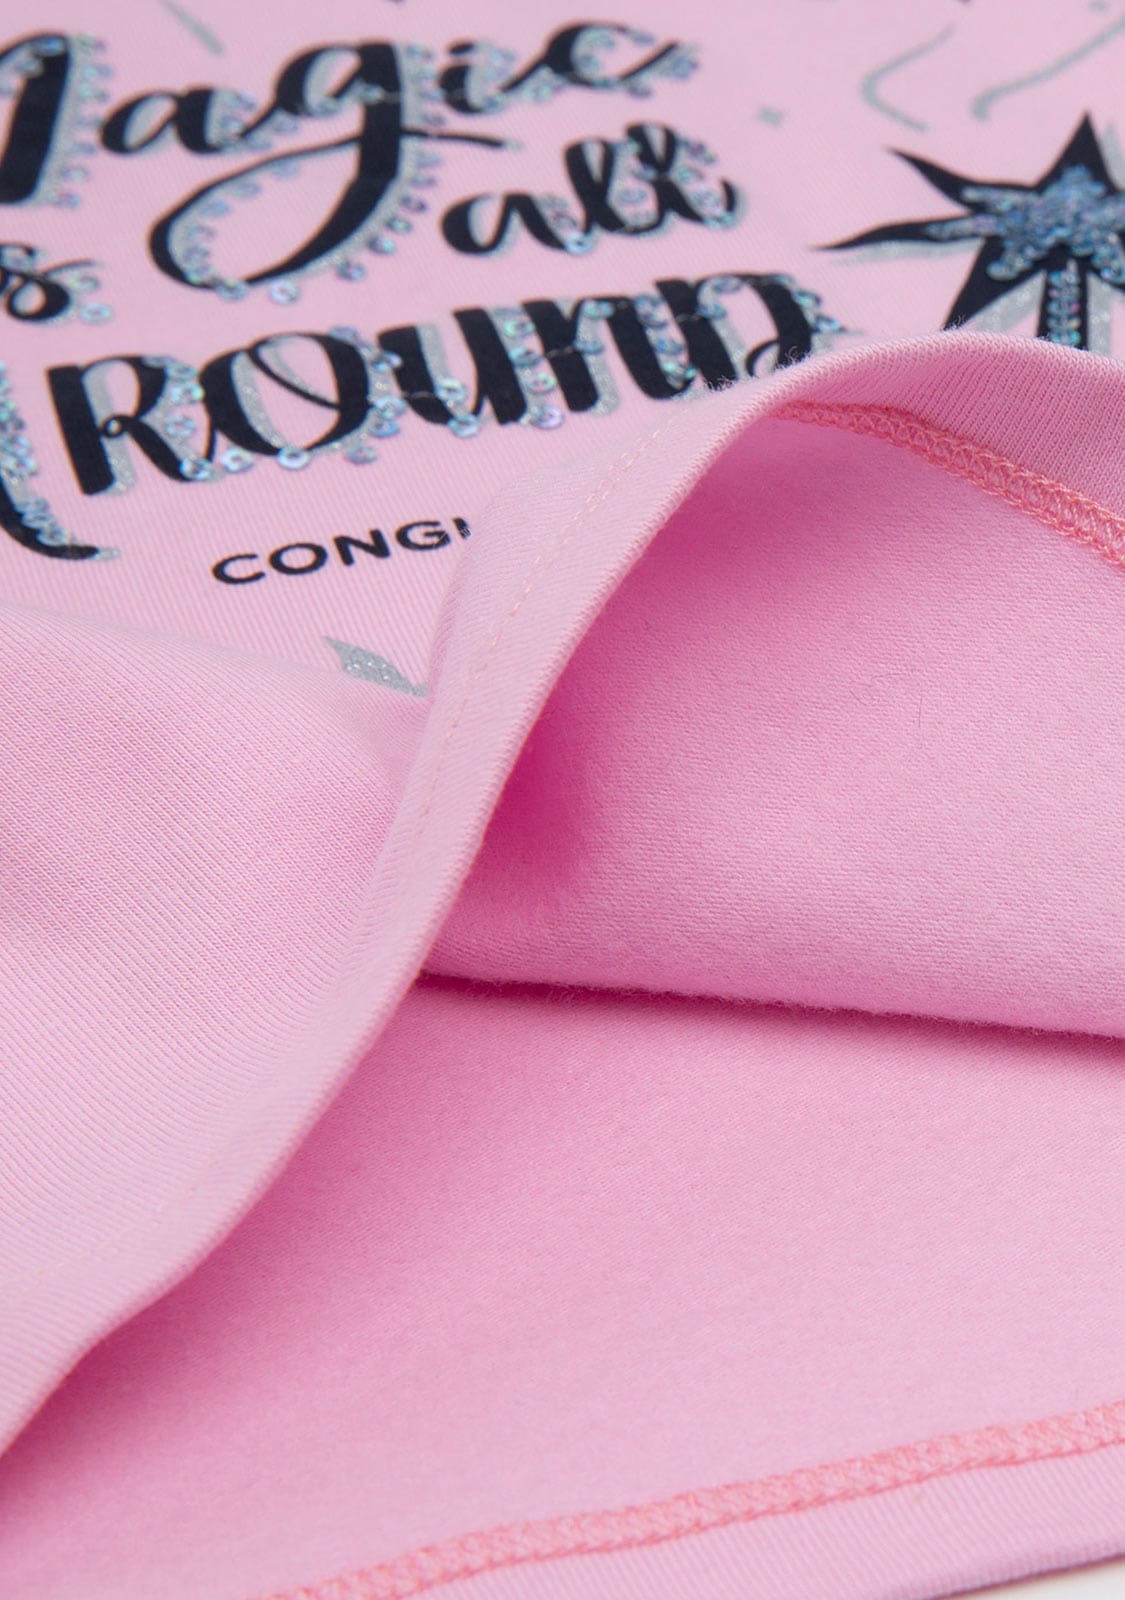 CONGUITOS TEXTIL Clothing Girl's Pink Magic Wand T-Shirt